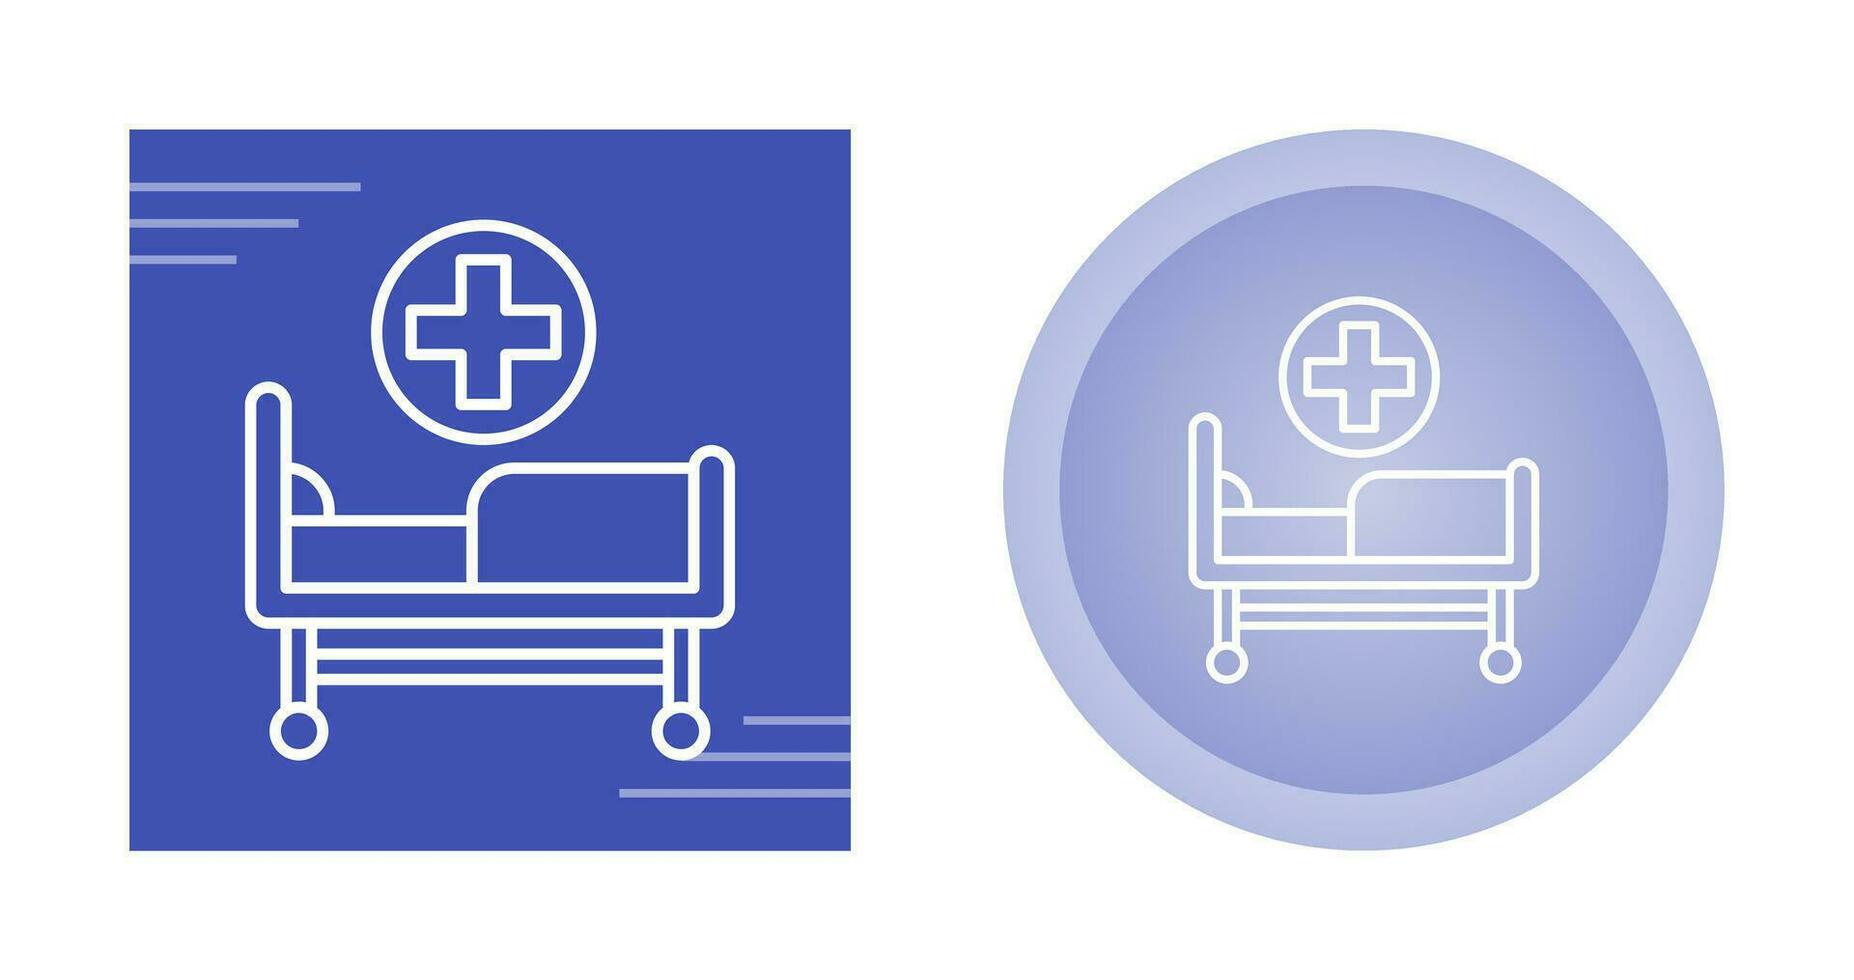 icône de vecteur de lit d'hôpital